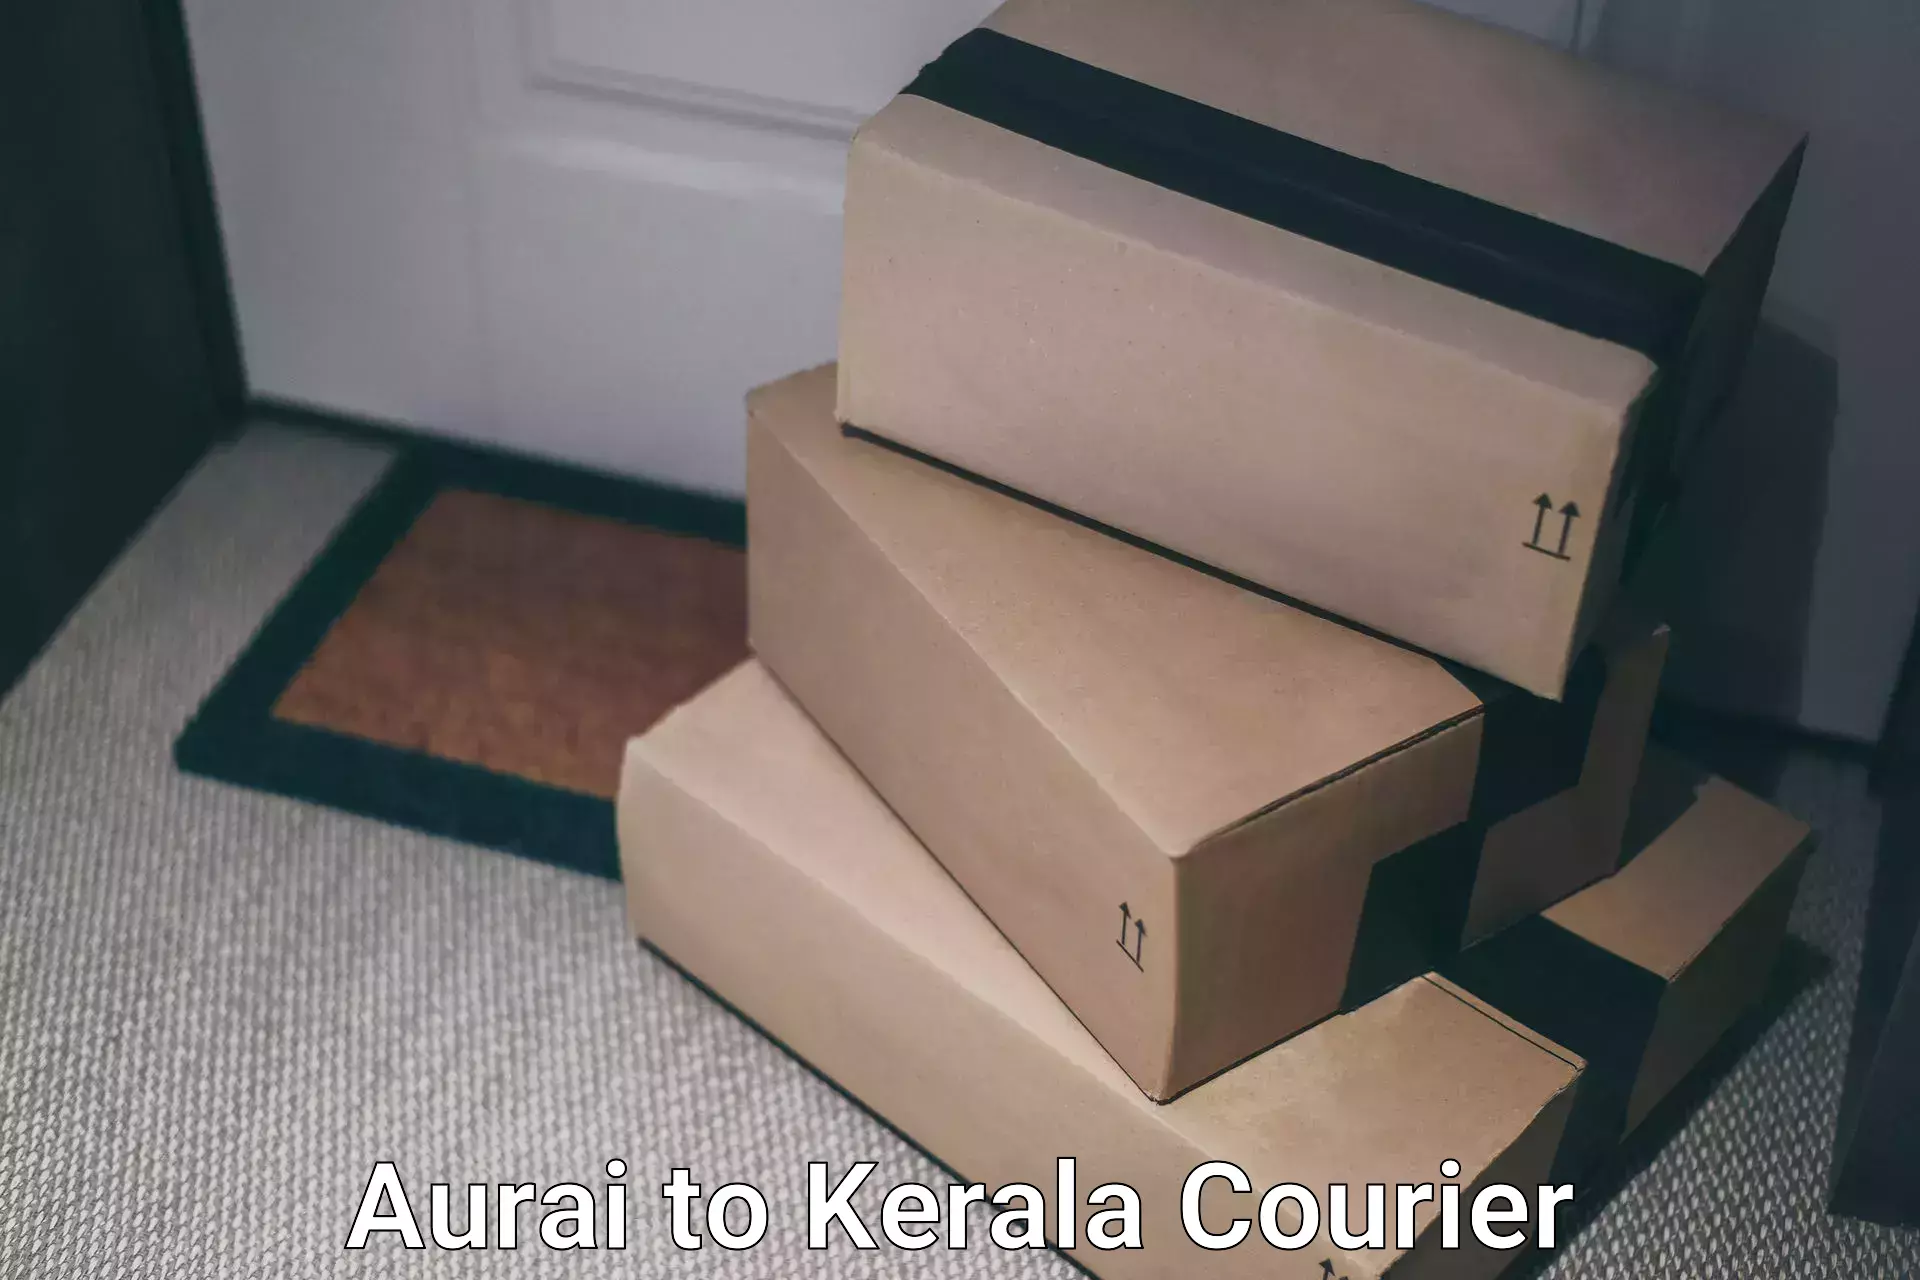 Door-to-door freight service Aurai to Kerala